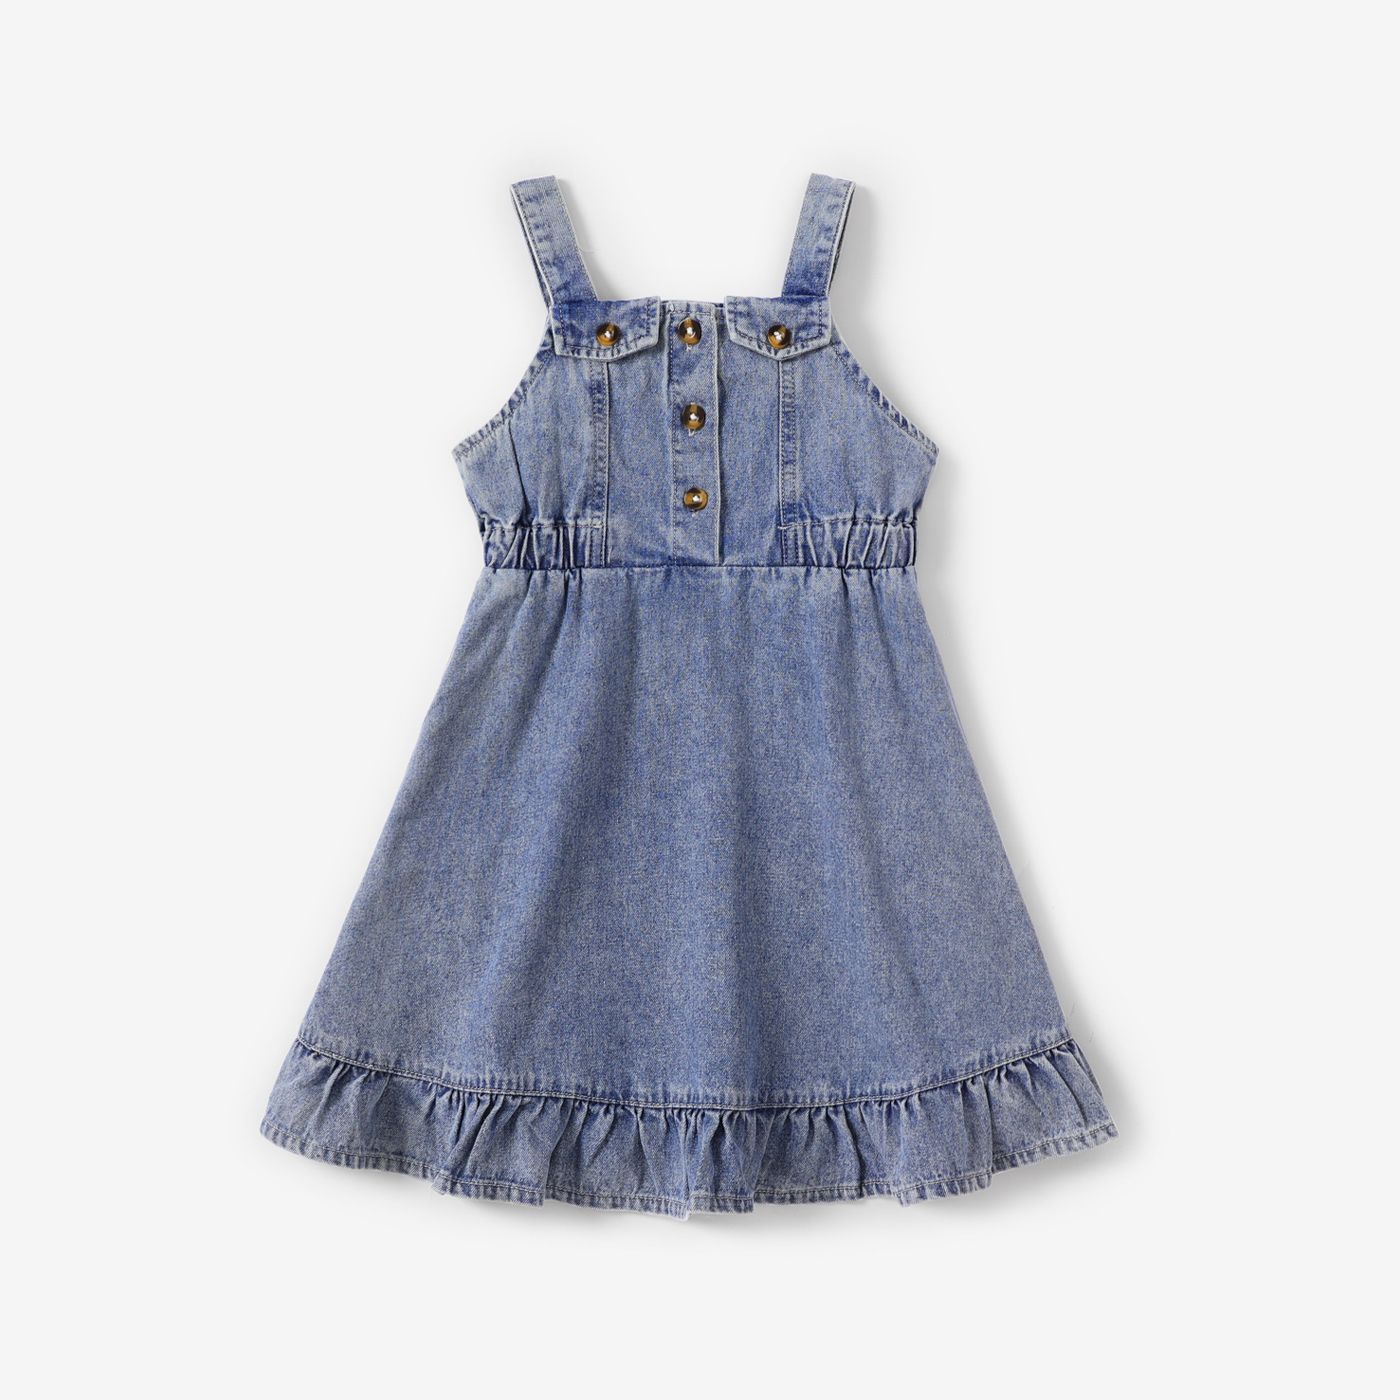 Monogramed Toddler Baby Girl's Cotton Chambray Denim Dress Ruffle Dress  Gift for Baby Girl Gift for Baby Toddler - Etsy